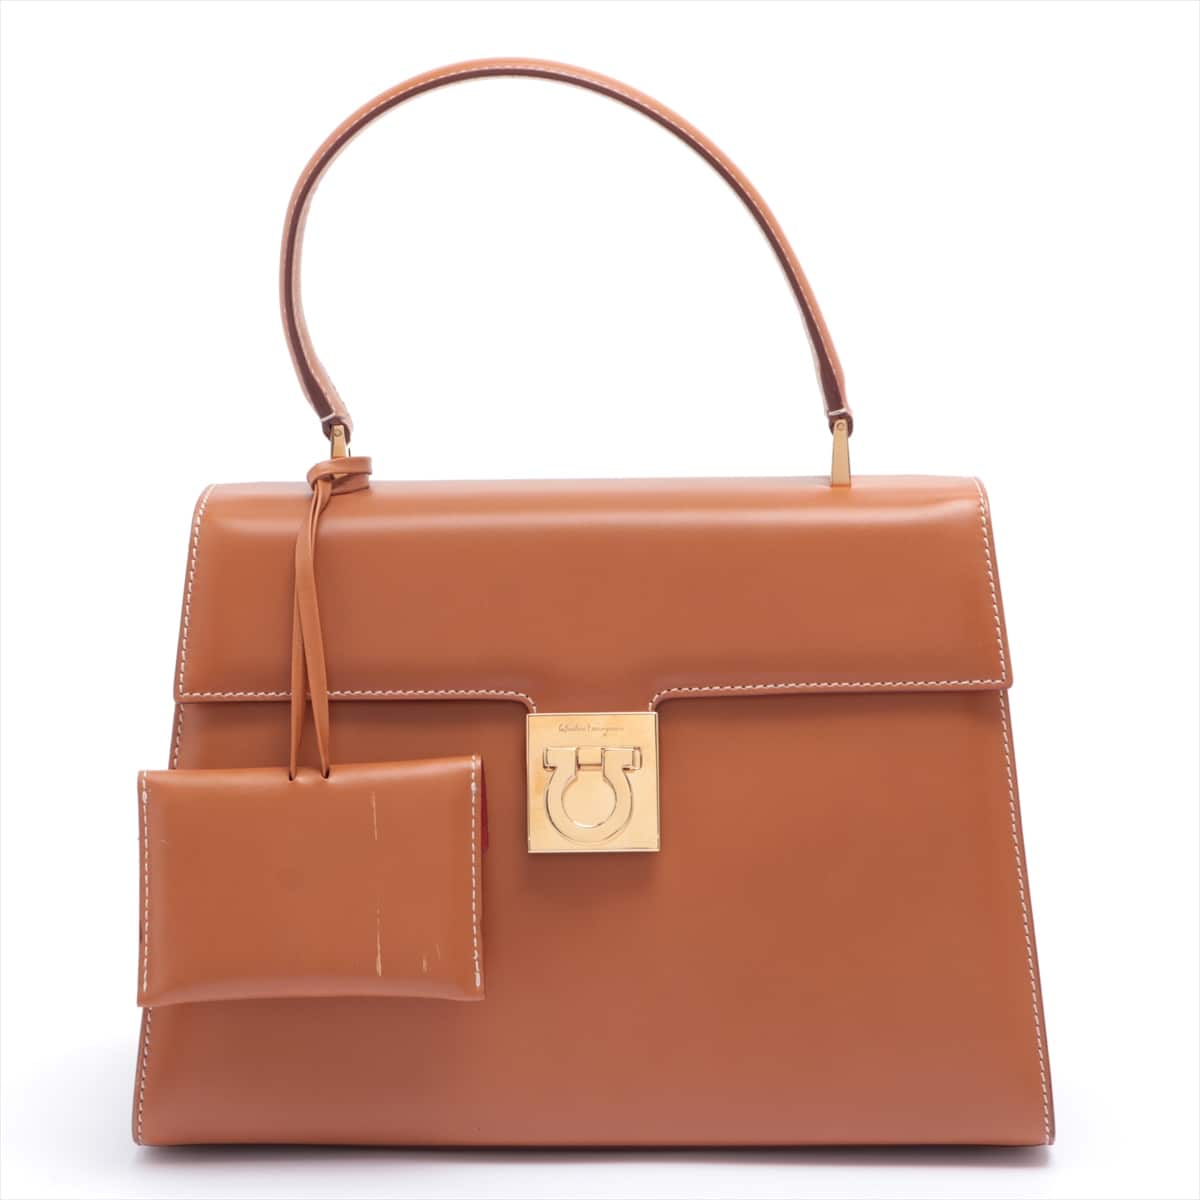 Ferragamo Gancini Leather 2way handbag Brown DY212410